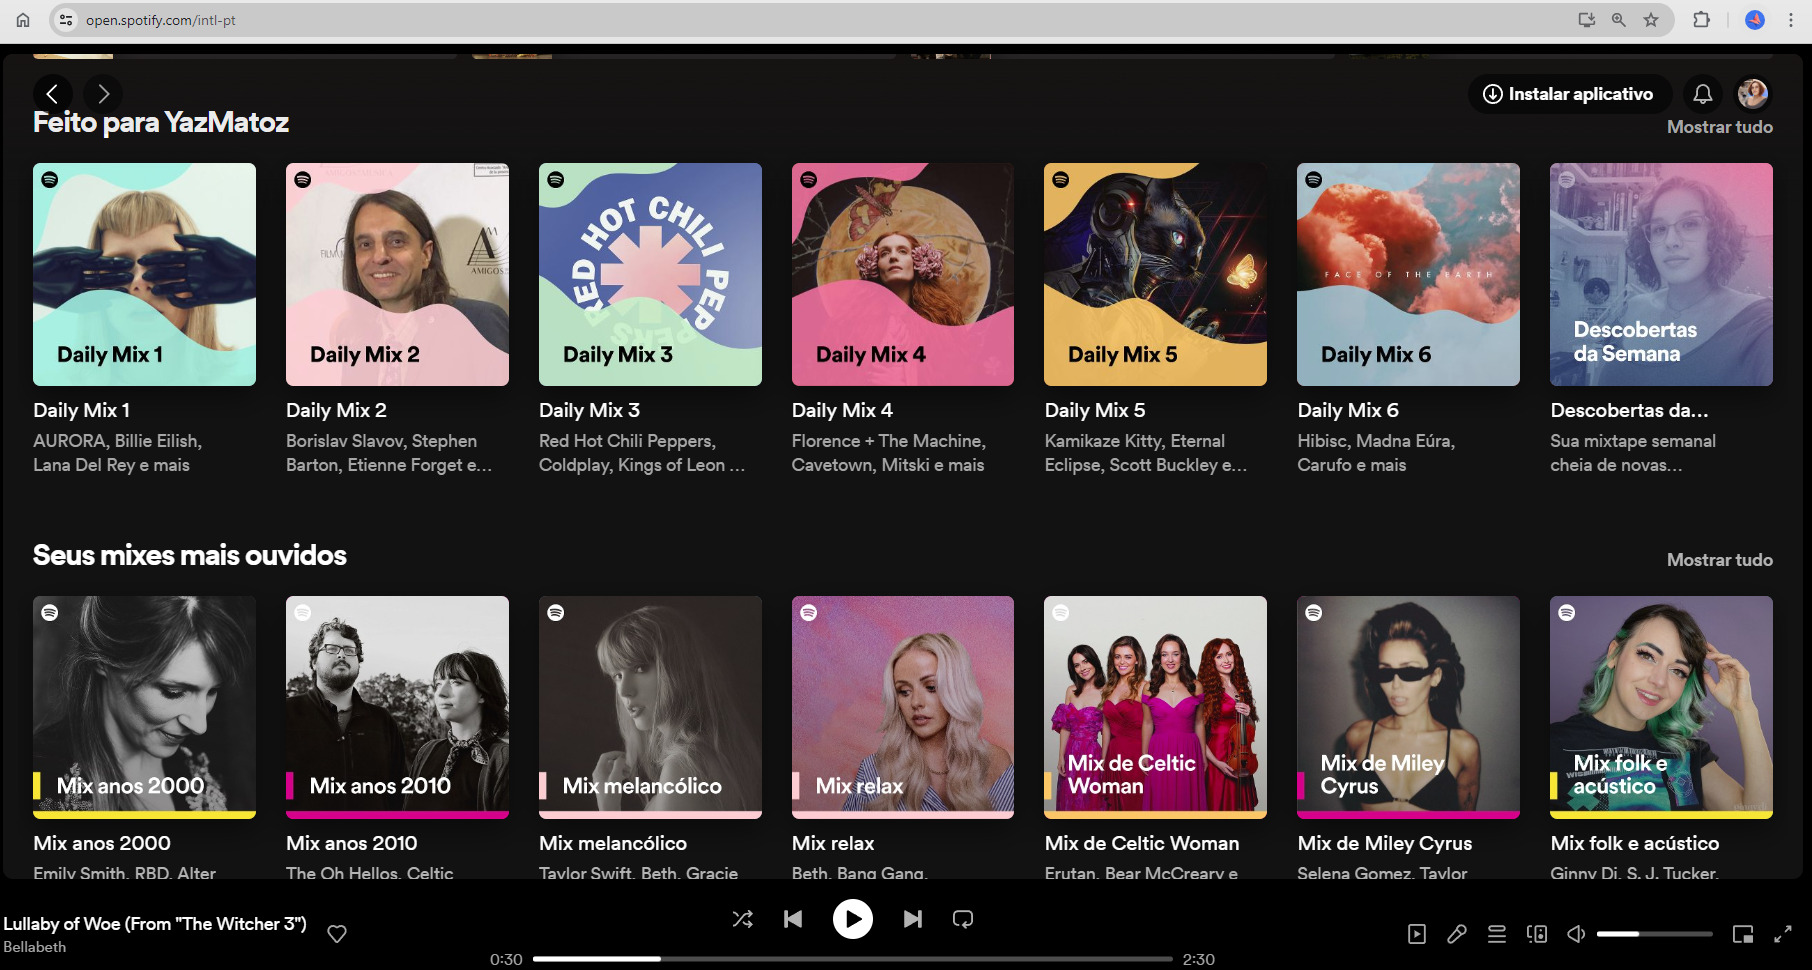 Printscreen de tela com playlists sugeridas pelo Spotify para pessoa usuária.